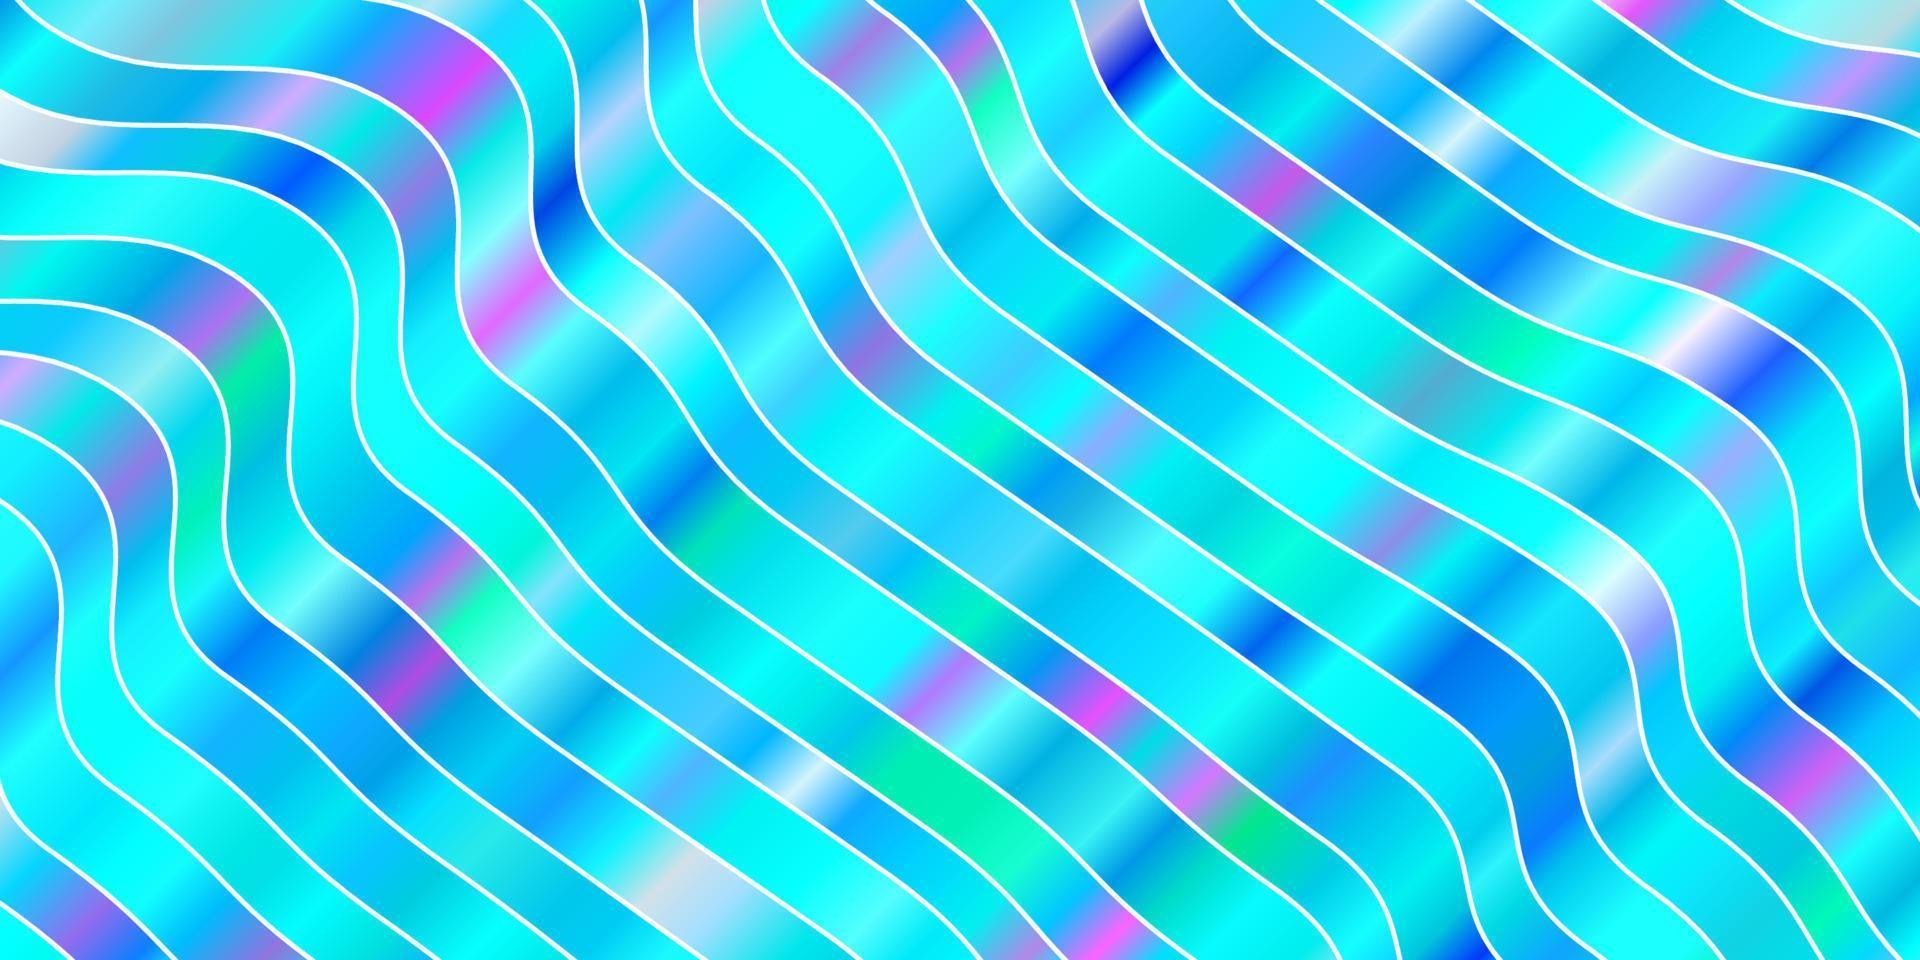 modèle vectoriel rose clair, bleu avec des lignes courbes.